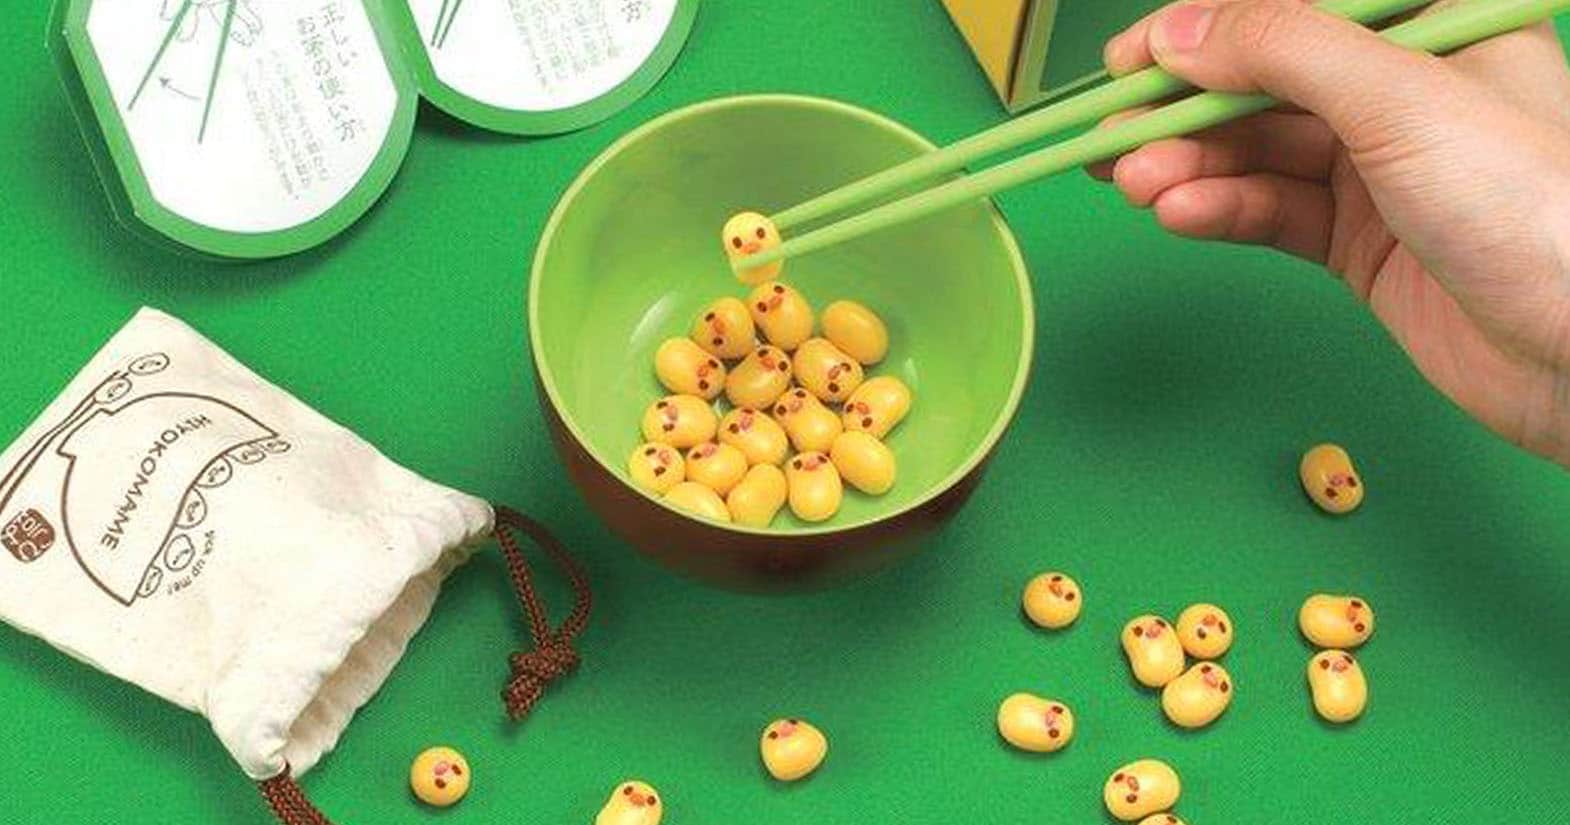 Manner Beans Chopstick Game